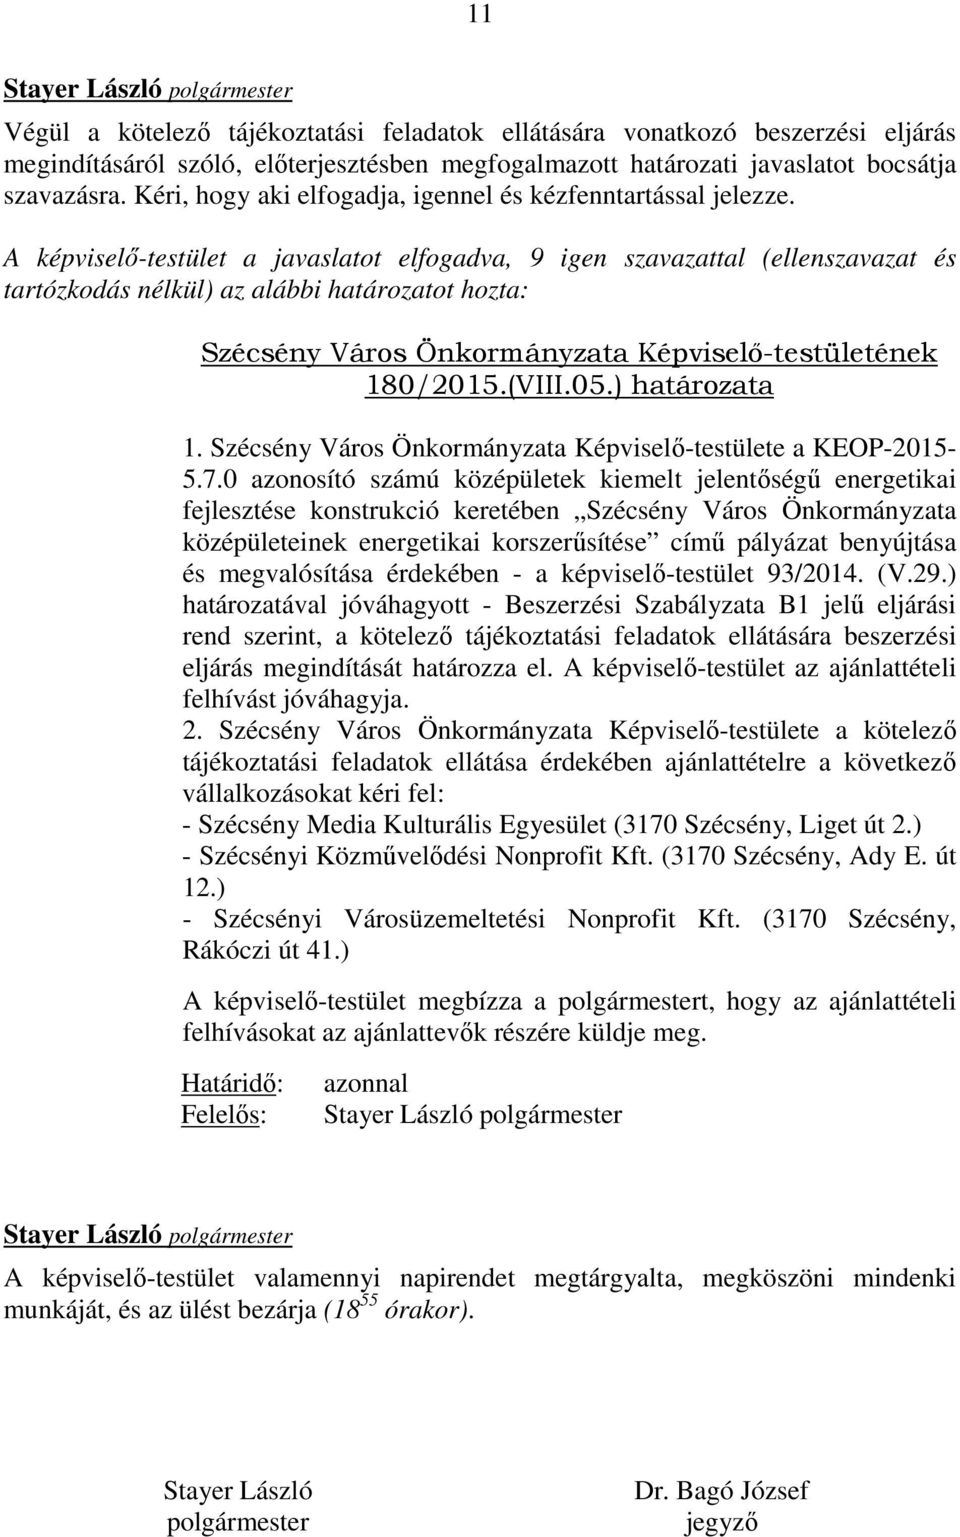 A képviselő-testület a javaslatot elfogadva, 9 igen szavazattal (ellenszavazat és tartózkodás nélkül) az alábbi határozatot hozta: Szécsény Város Önkormányzata Képviselő-testületének 180/2015.(VIII.